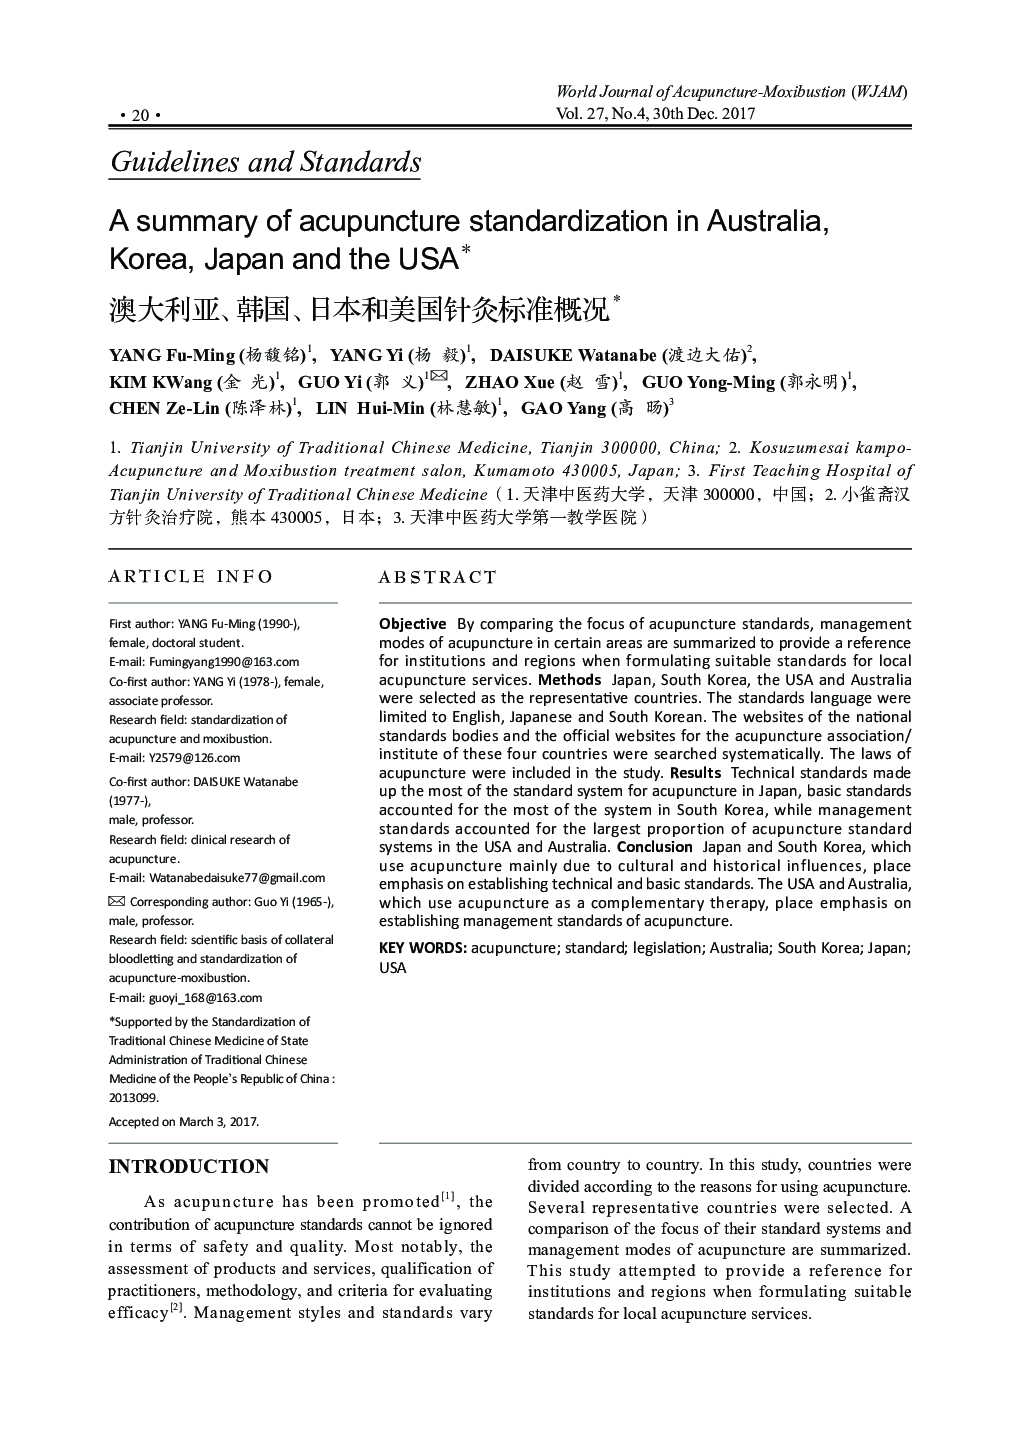 خلاصه ای از استاندارد سازی طب سوزنی در استرالیا، کره، ژاپن و ایالات متحده آمریکا 